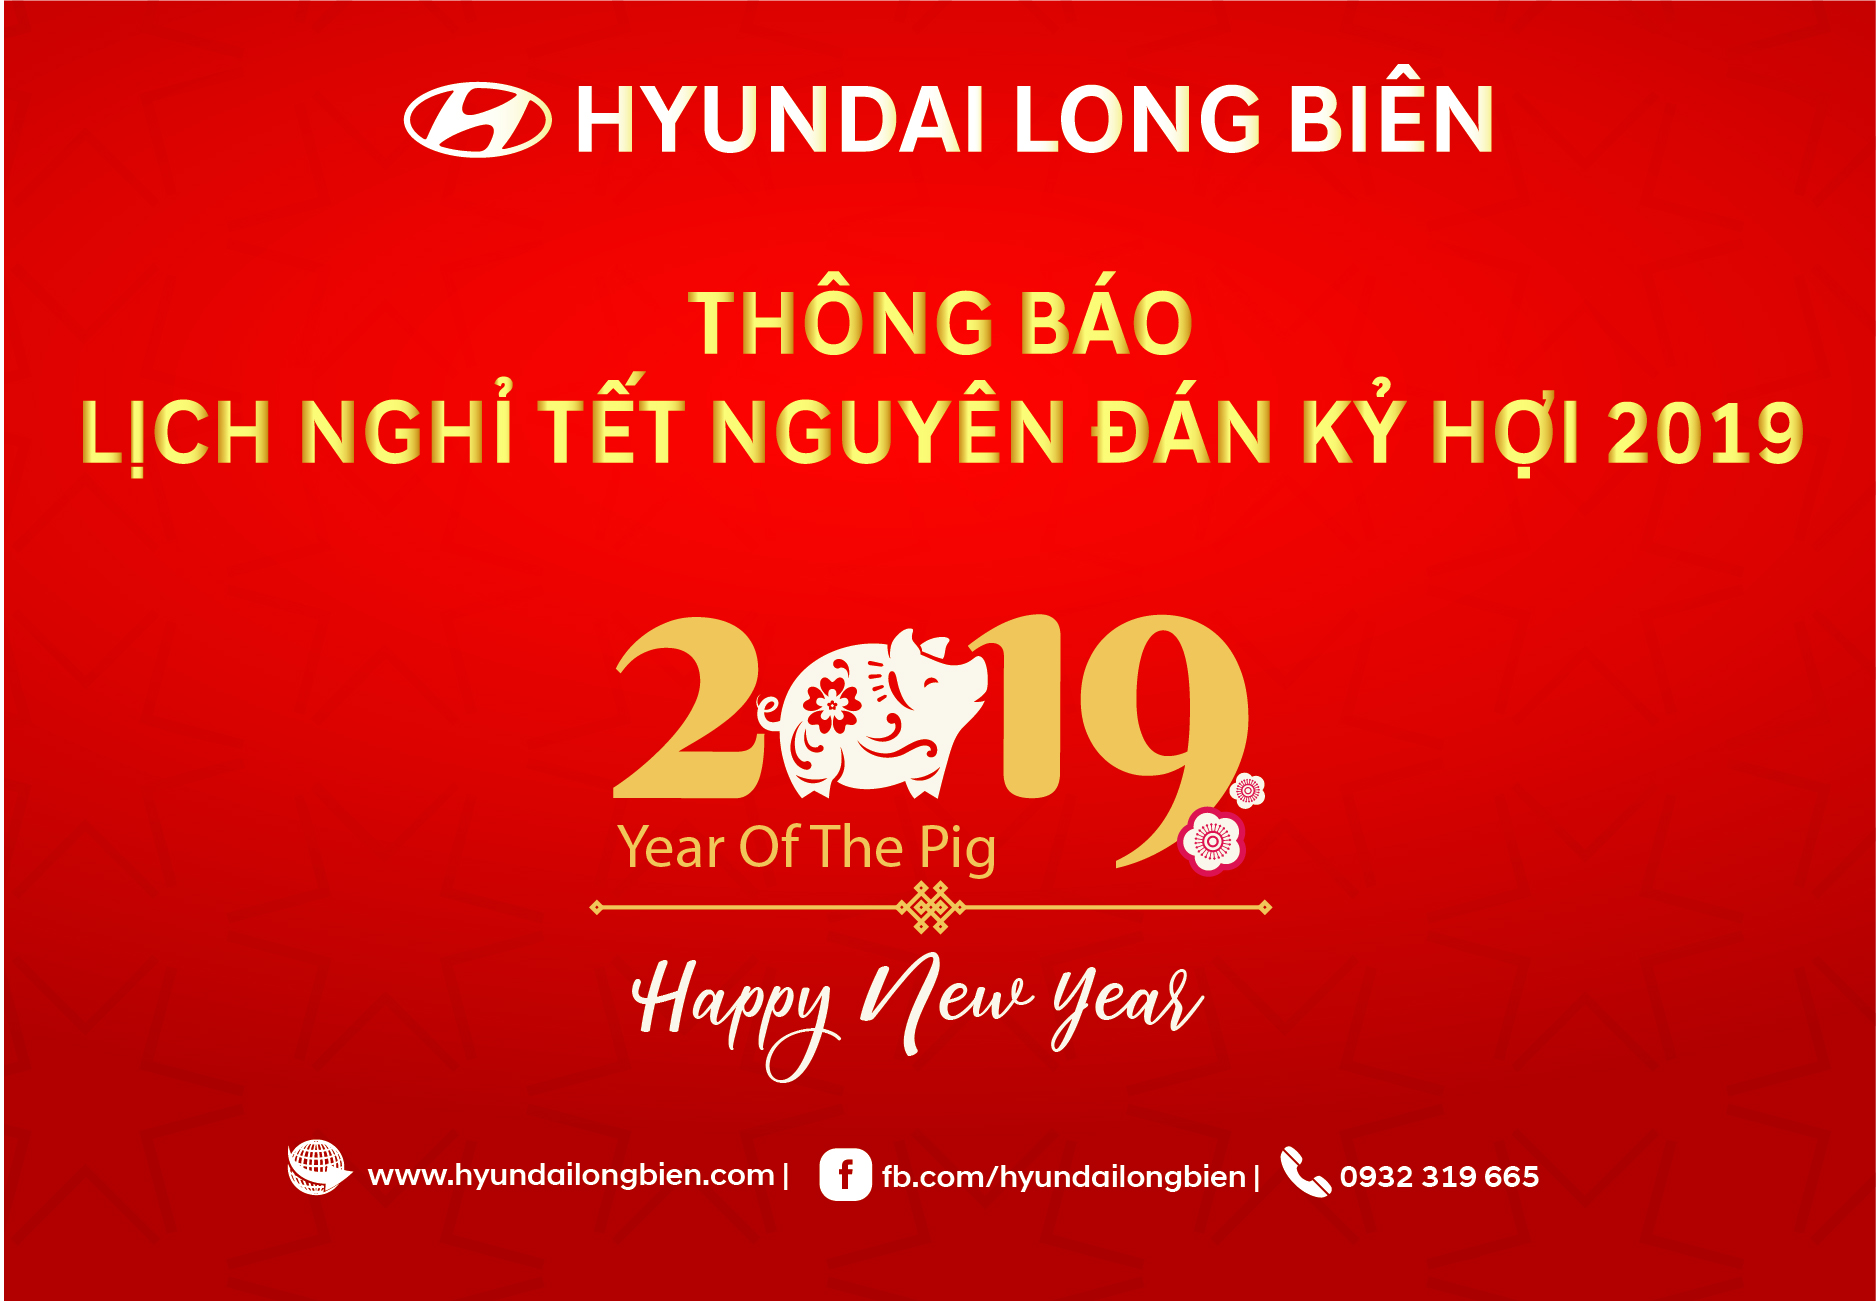 Thông báo LỊCH NGHỈ TẾT NGUYÊN ĐÁN KỶ HỢI 2019  - Hyundai Long Biên